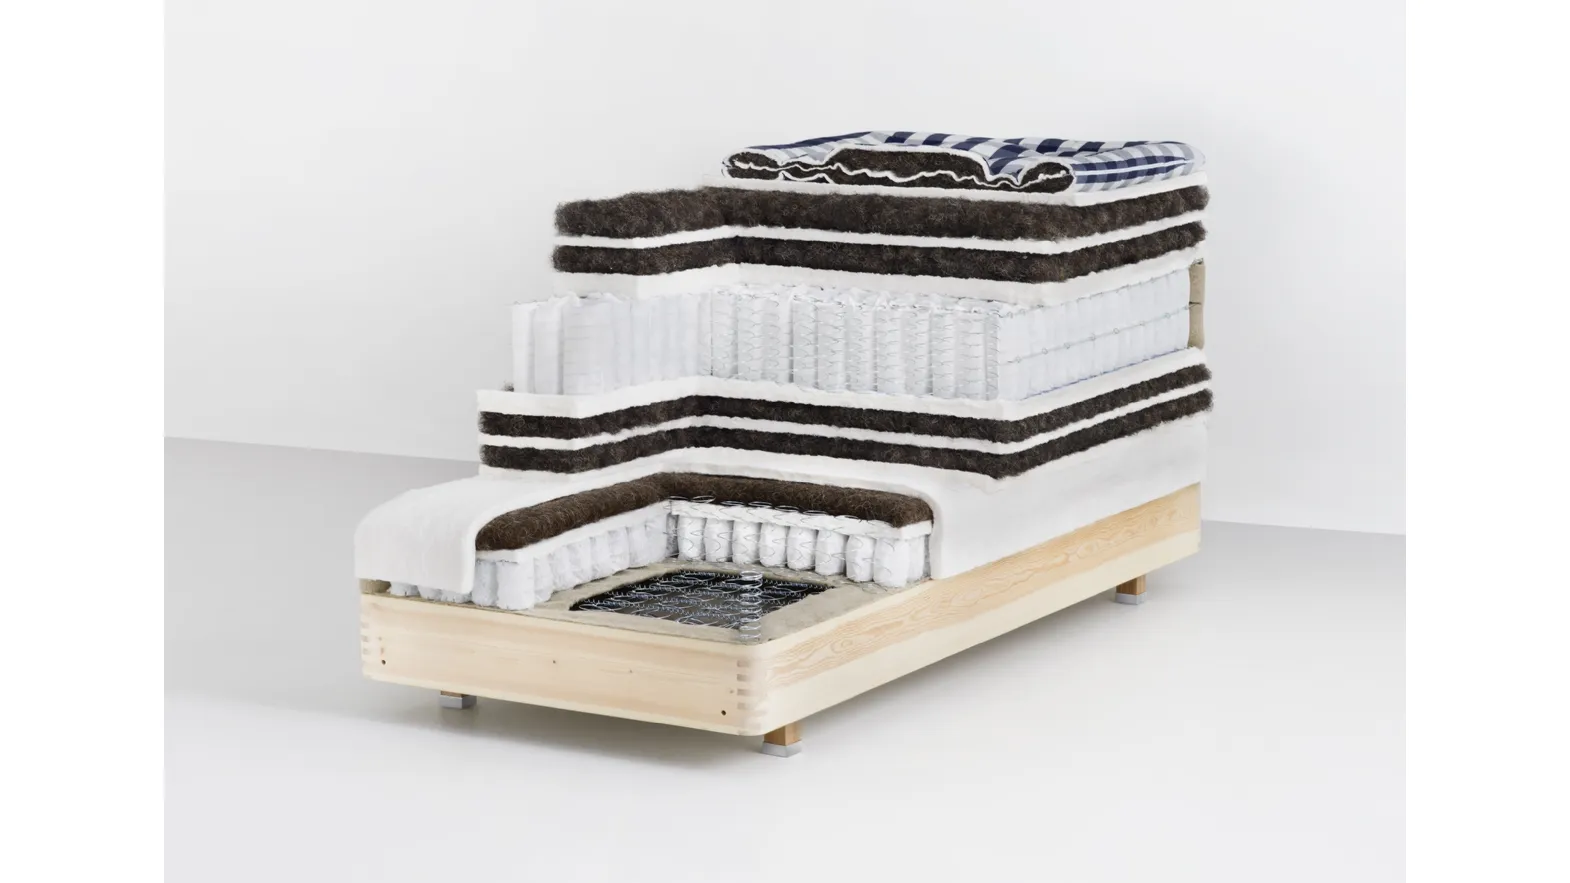 2000T pocket spring mattress by Hastens